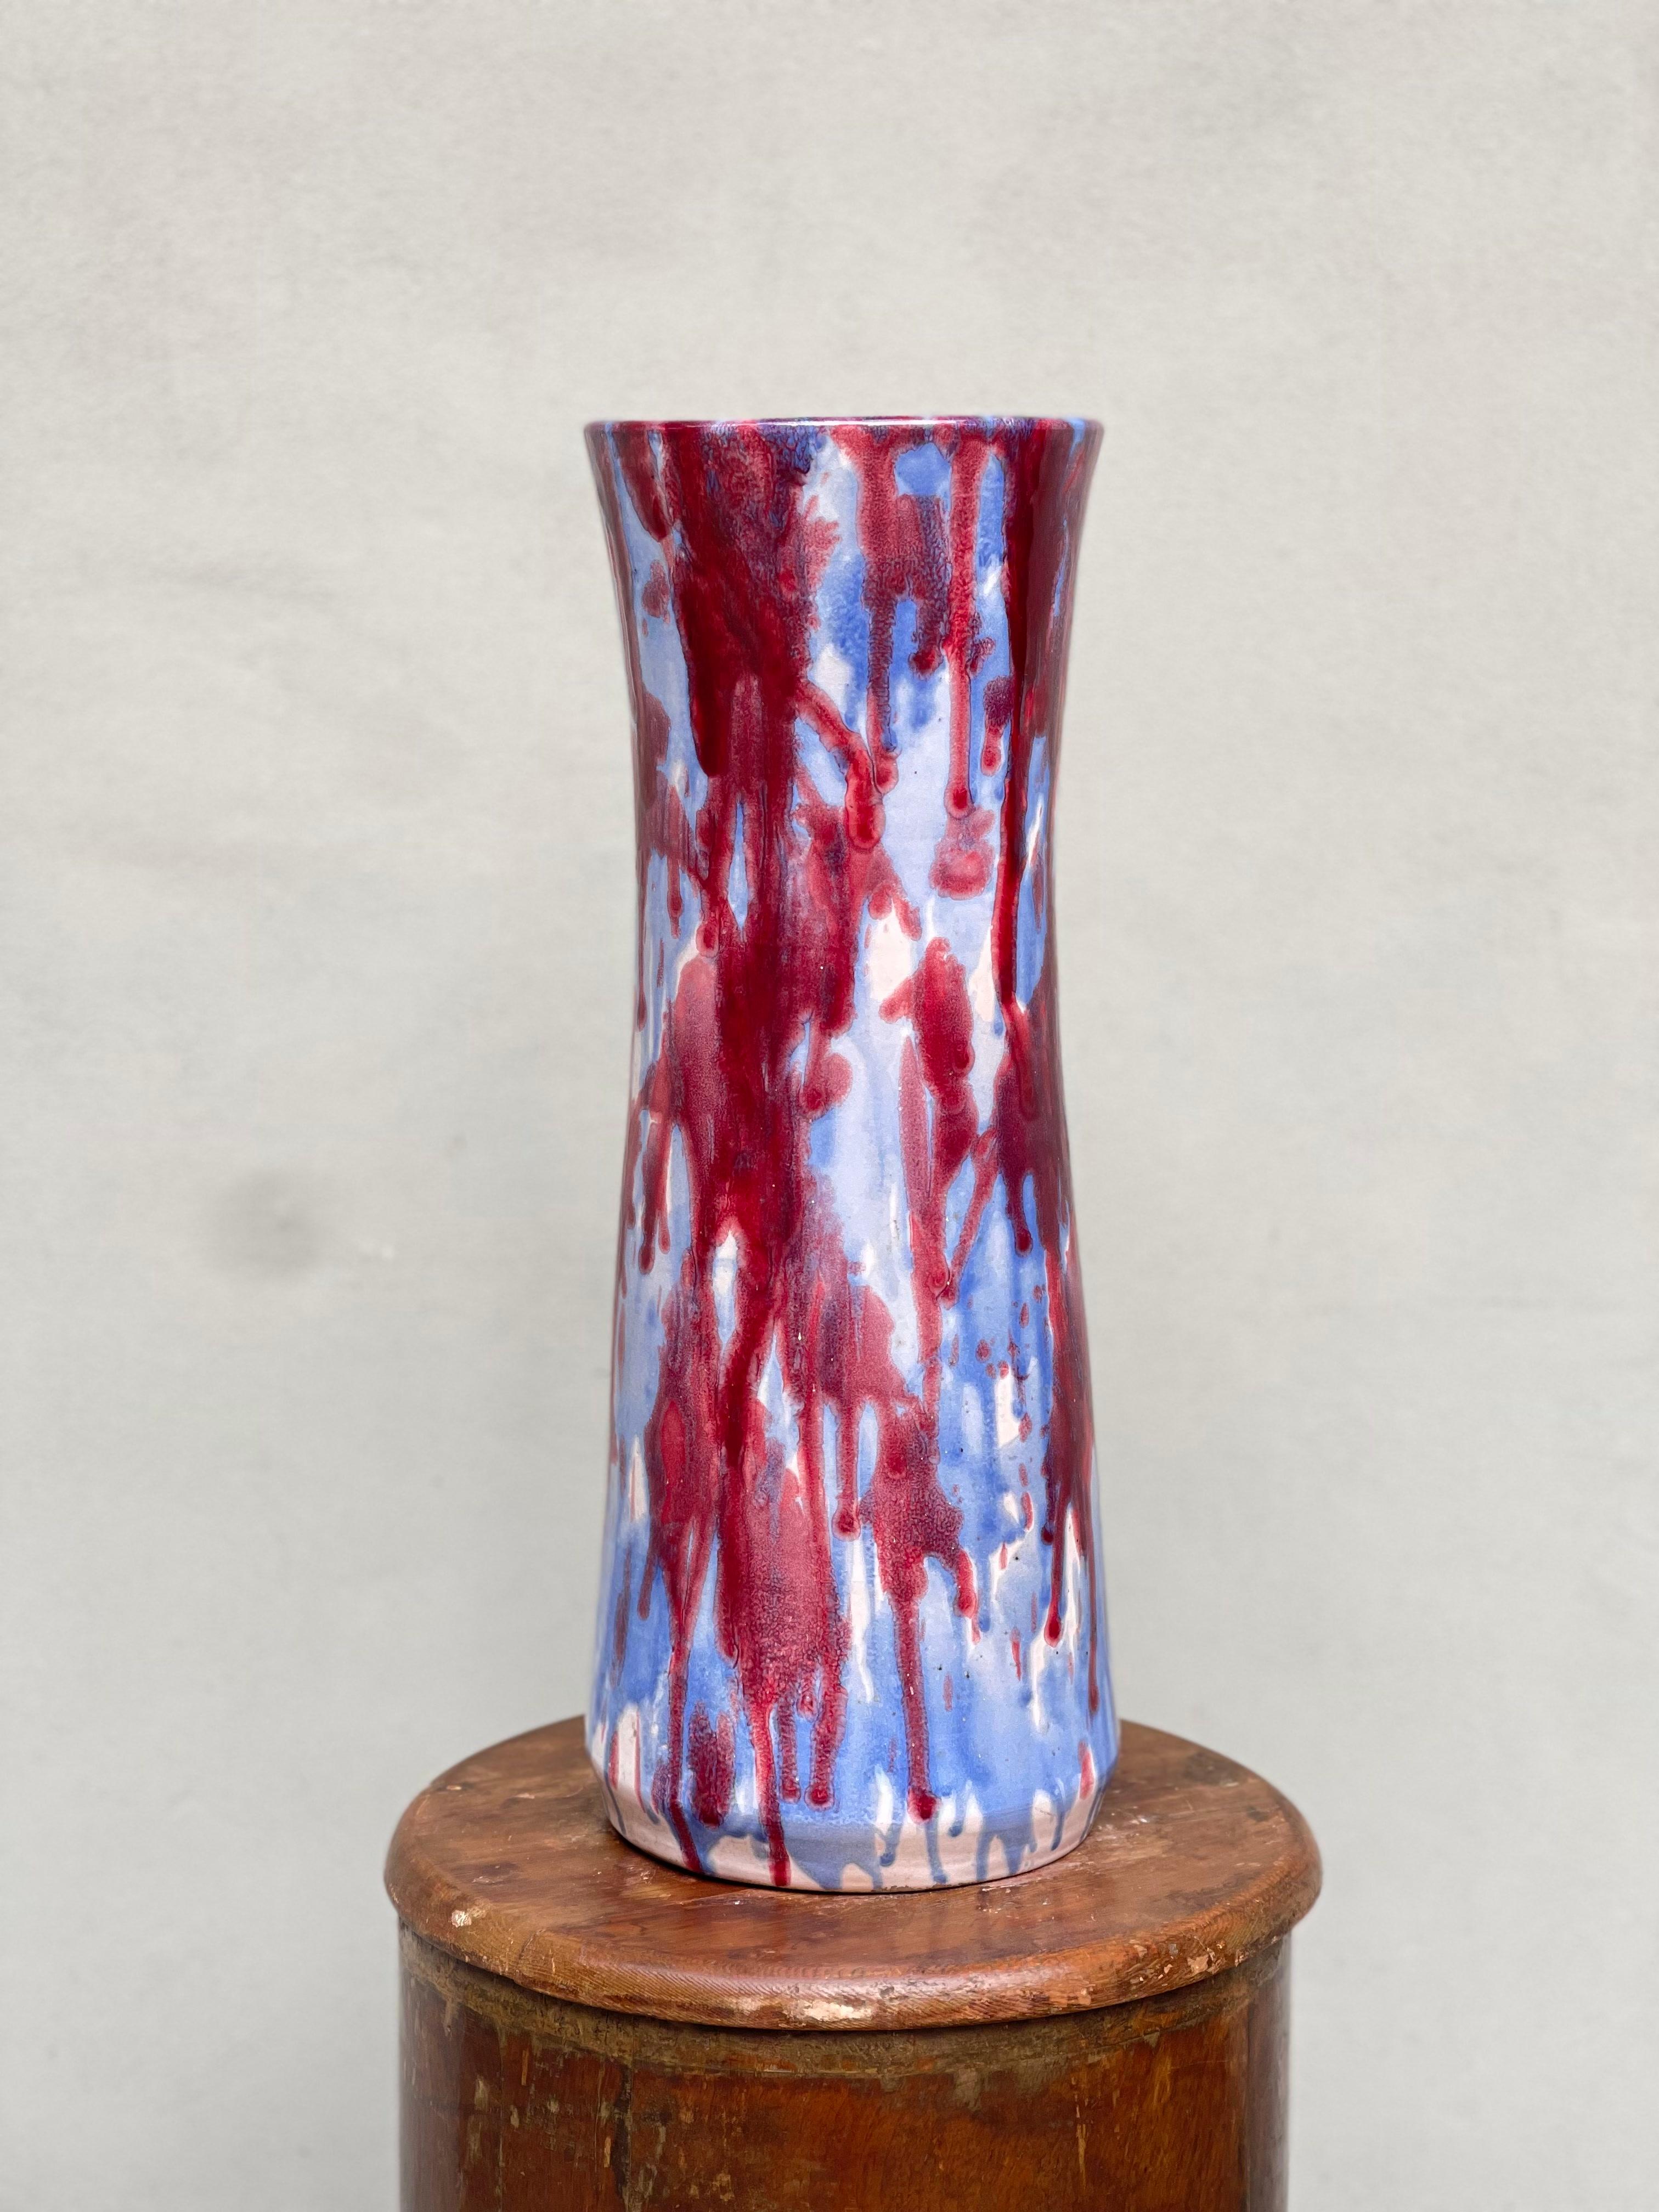 vaso in ceramica anni 60 - vintage - design vase - ceramic vase - ceramica

Descrizione dell'oggetto
vaso in ceramica smaltato anni '60 di produzione italiana. 



Dettagli sull'oggetto
Blu  
Rosso
AZZURRO 
COLORE
Ceramica  
MATERIALE
Eccellente